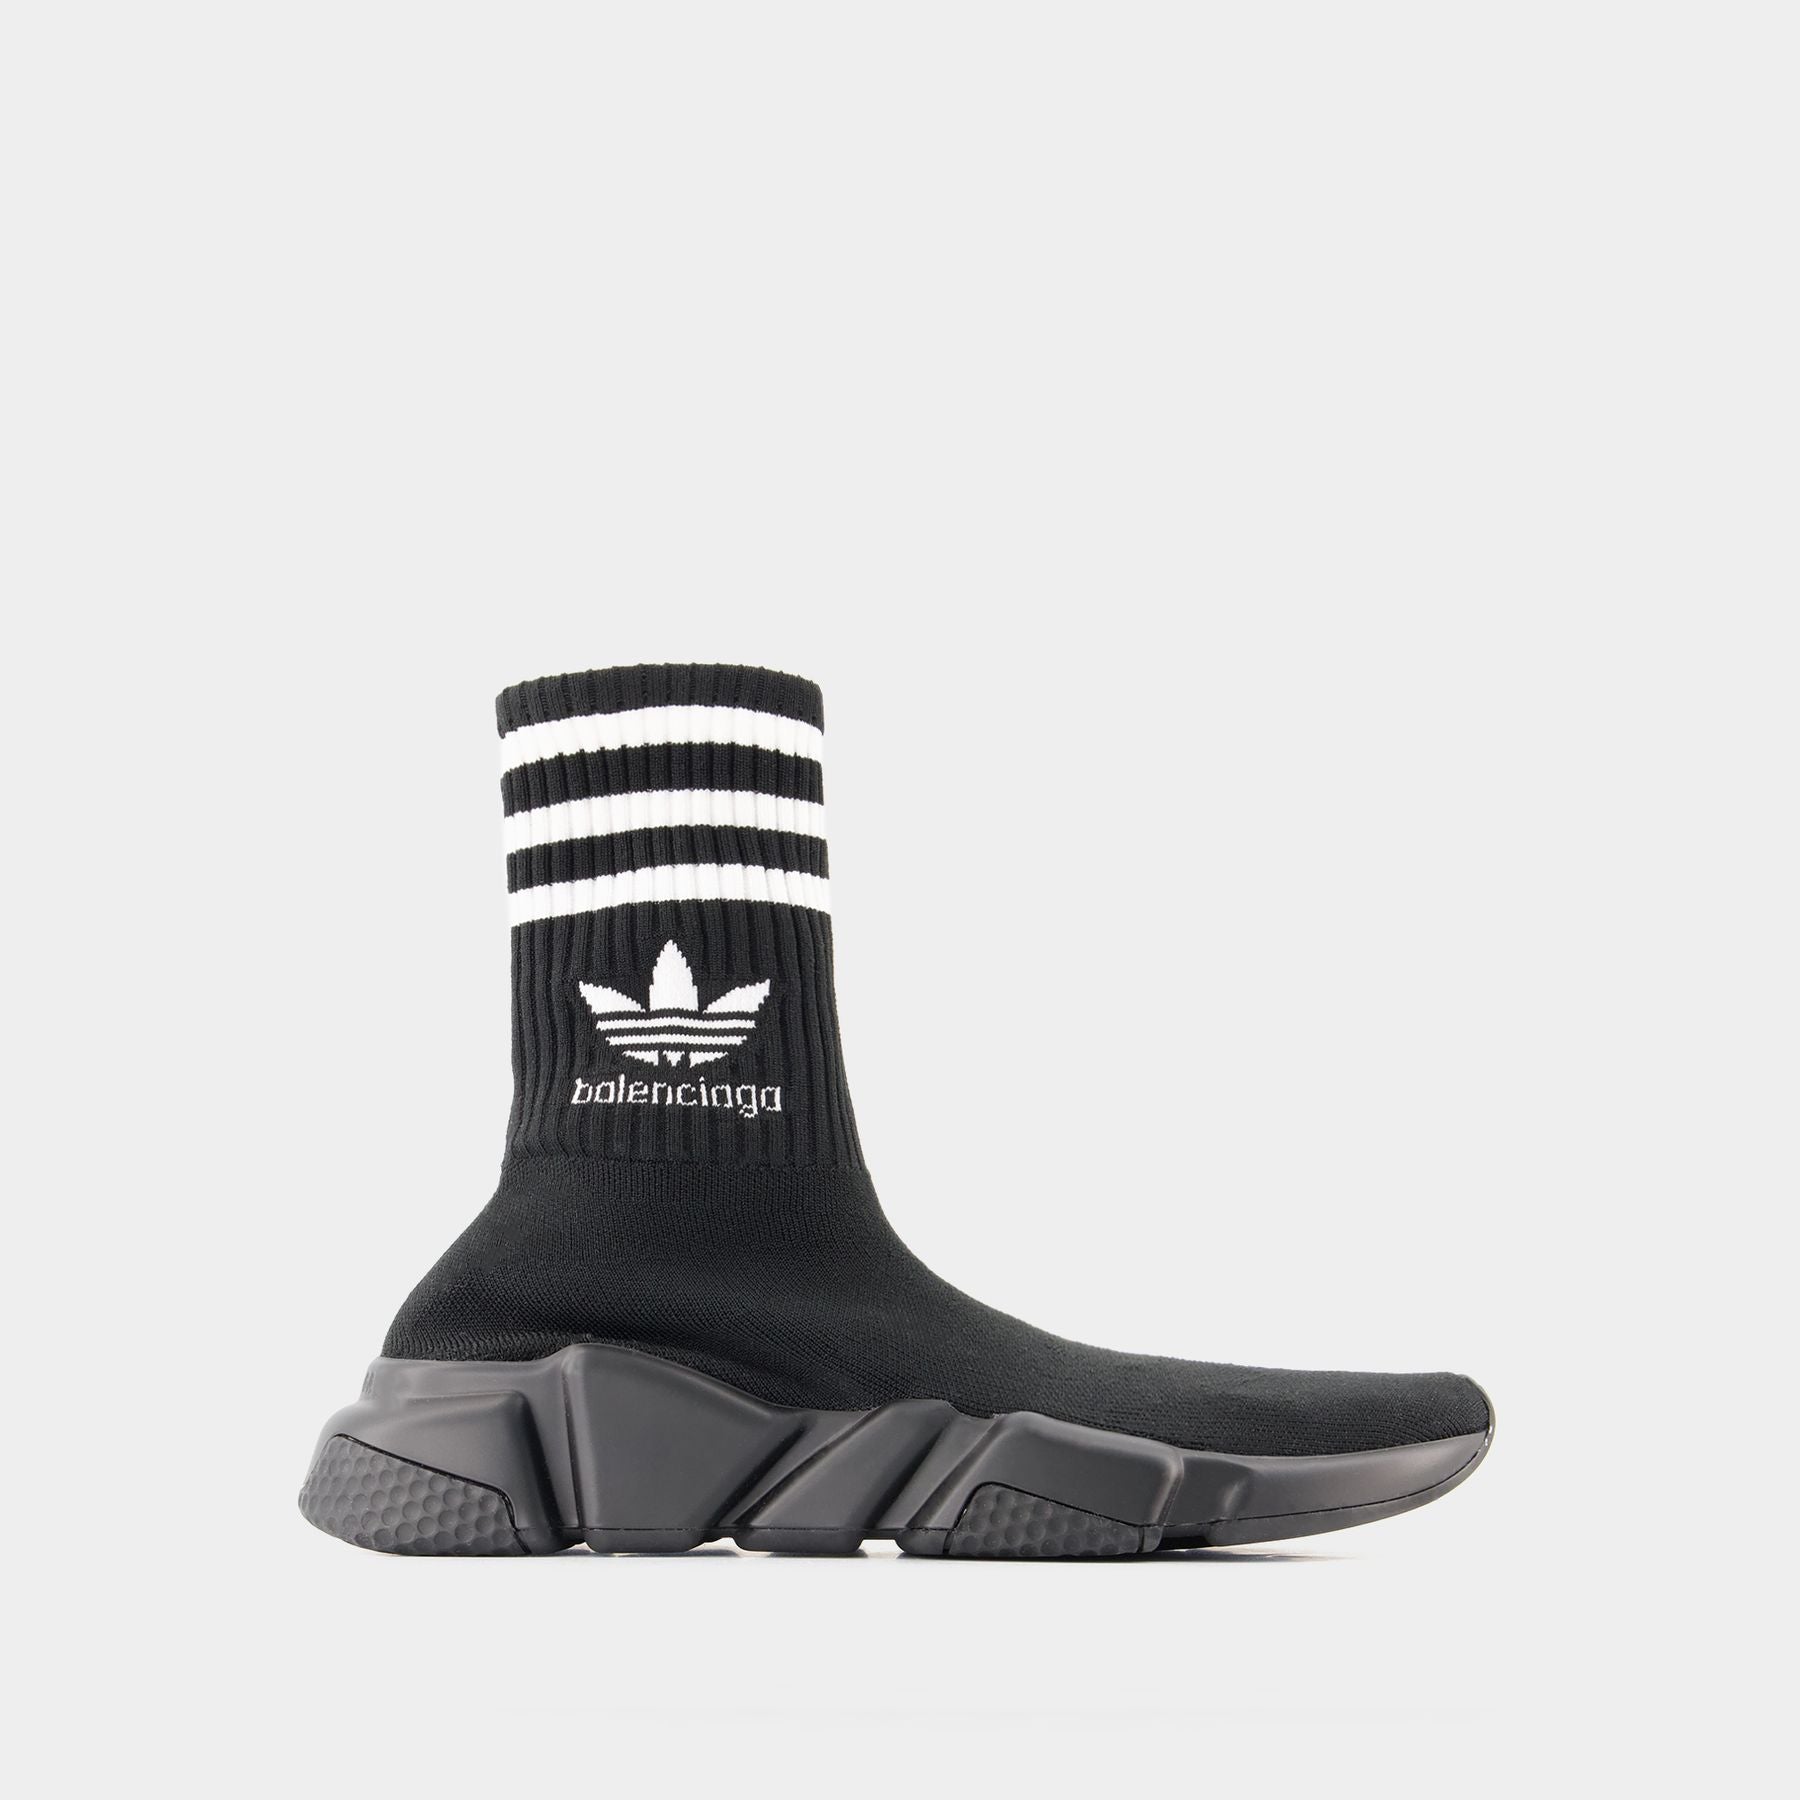 Sneakers Adidas - Balenciaga - Noir/Logo Blanc